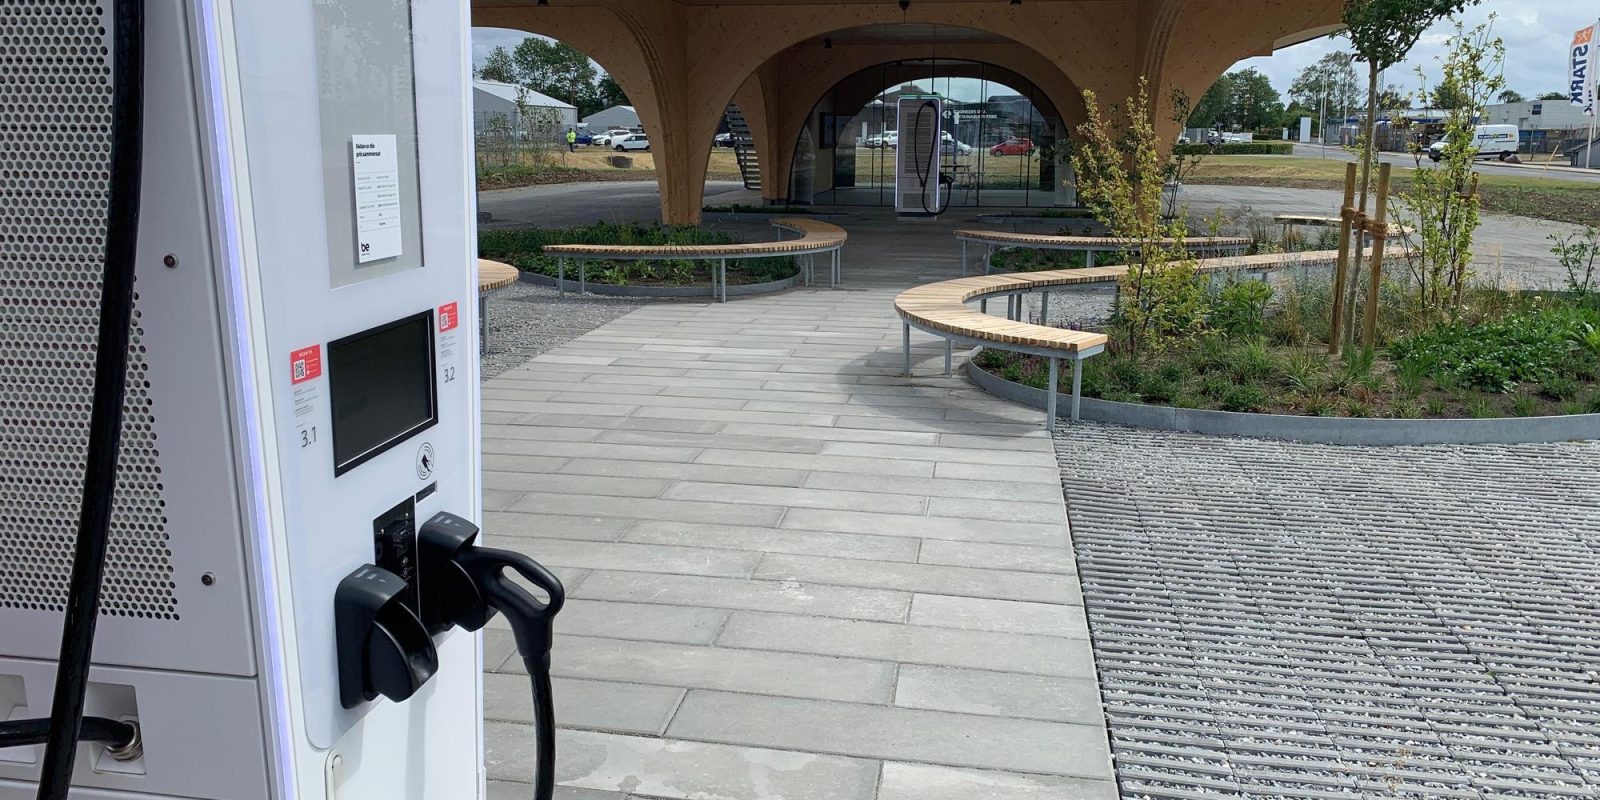 EV fast charging station